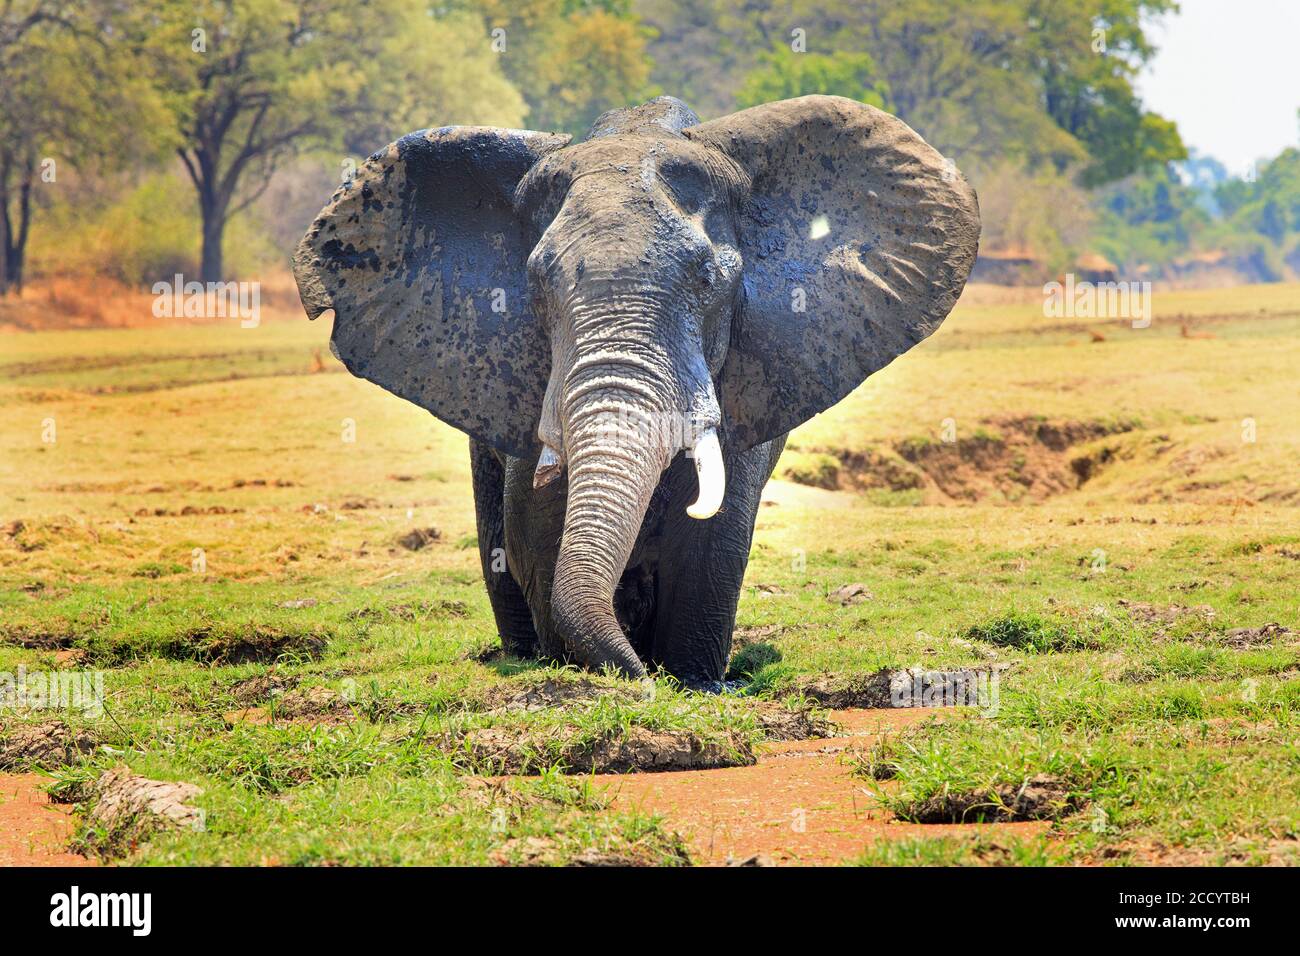 African Elephant mit Ohren flattern in einer Lagune Fütterung stehen Mit einem natürlichen lebendigen Buschveld Hintergrund Stockfoto